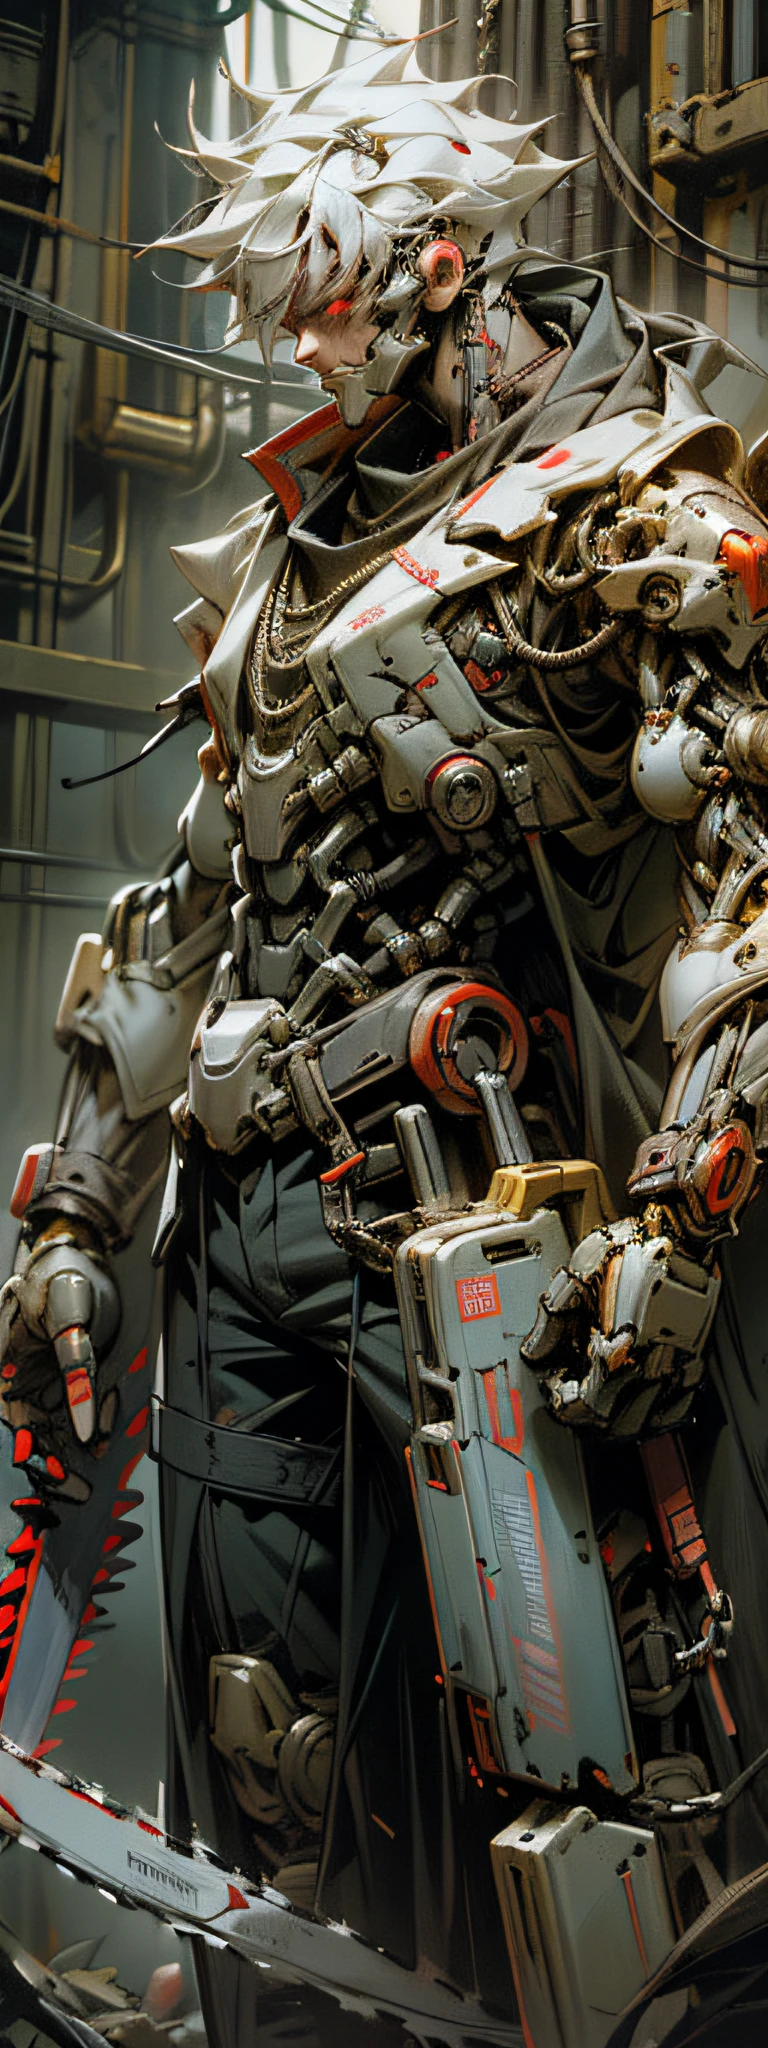 暗い_ファンタジー,サイバーパンク,(チェーンソー,チェーンソー man,赤:1.1),1人,機械の驚異,ロボットの存在,サイバネティックガーディアン,